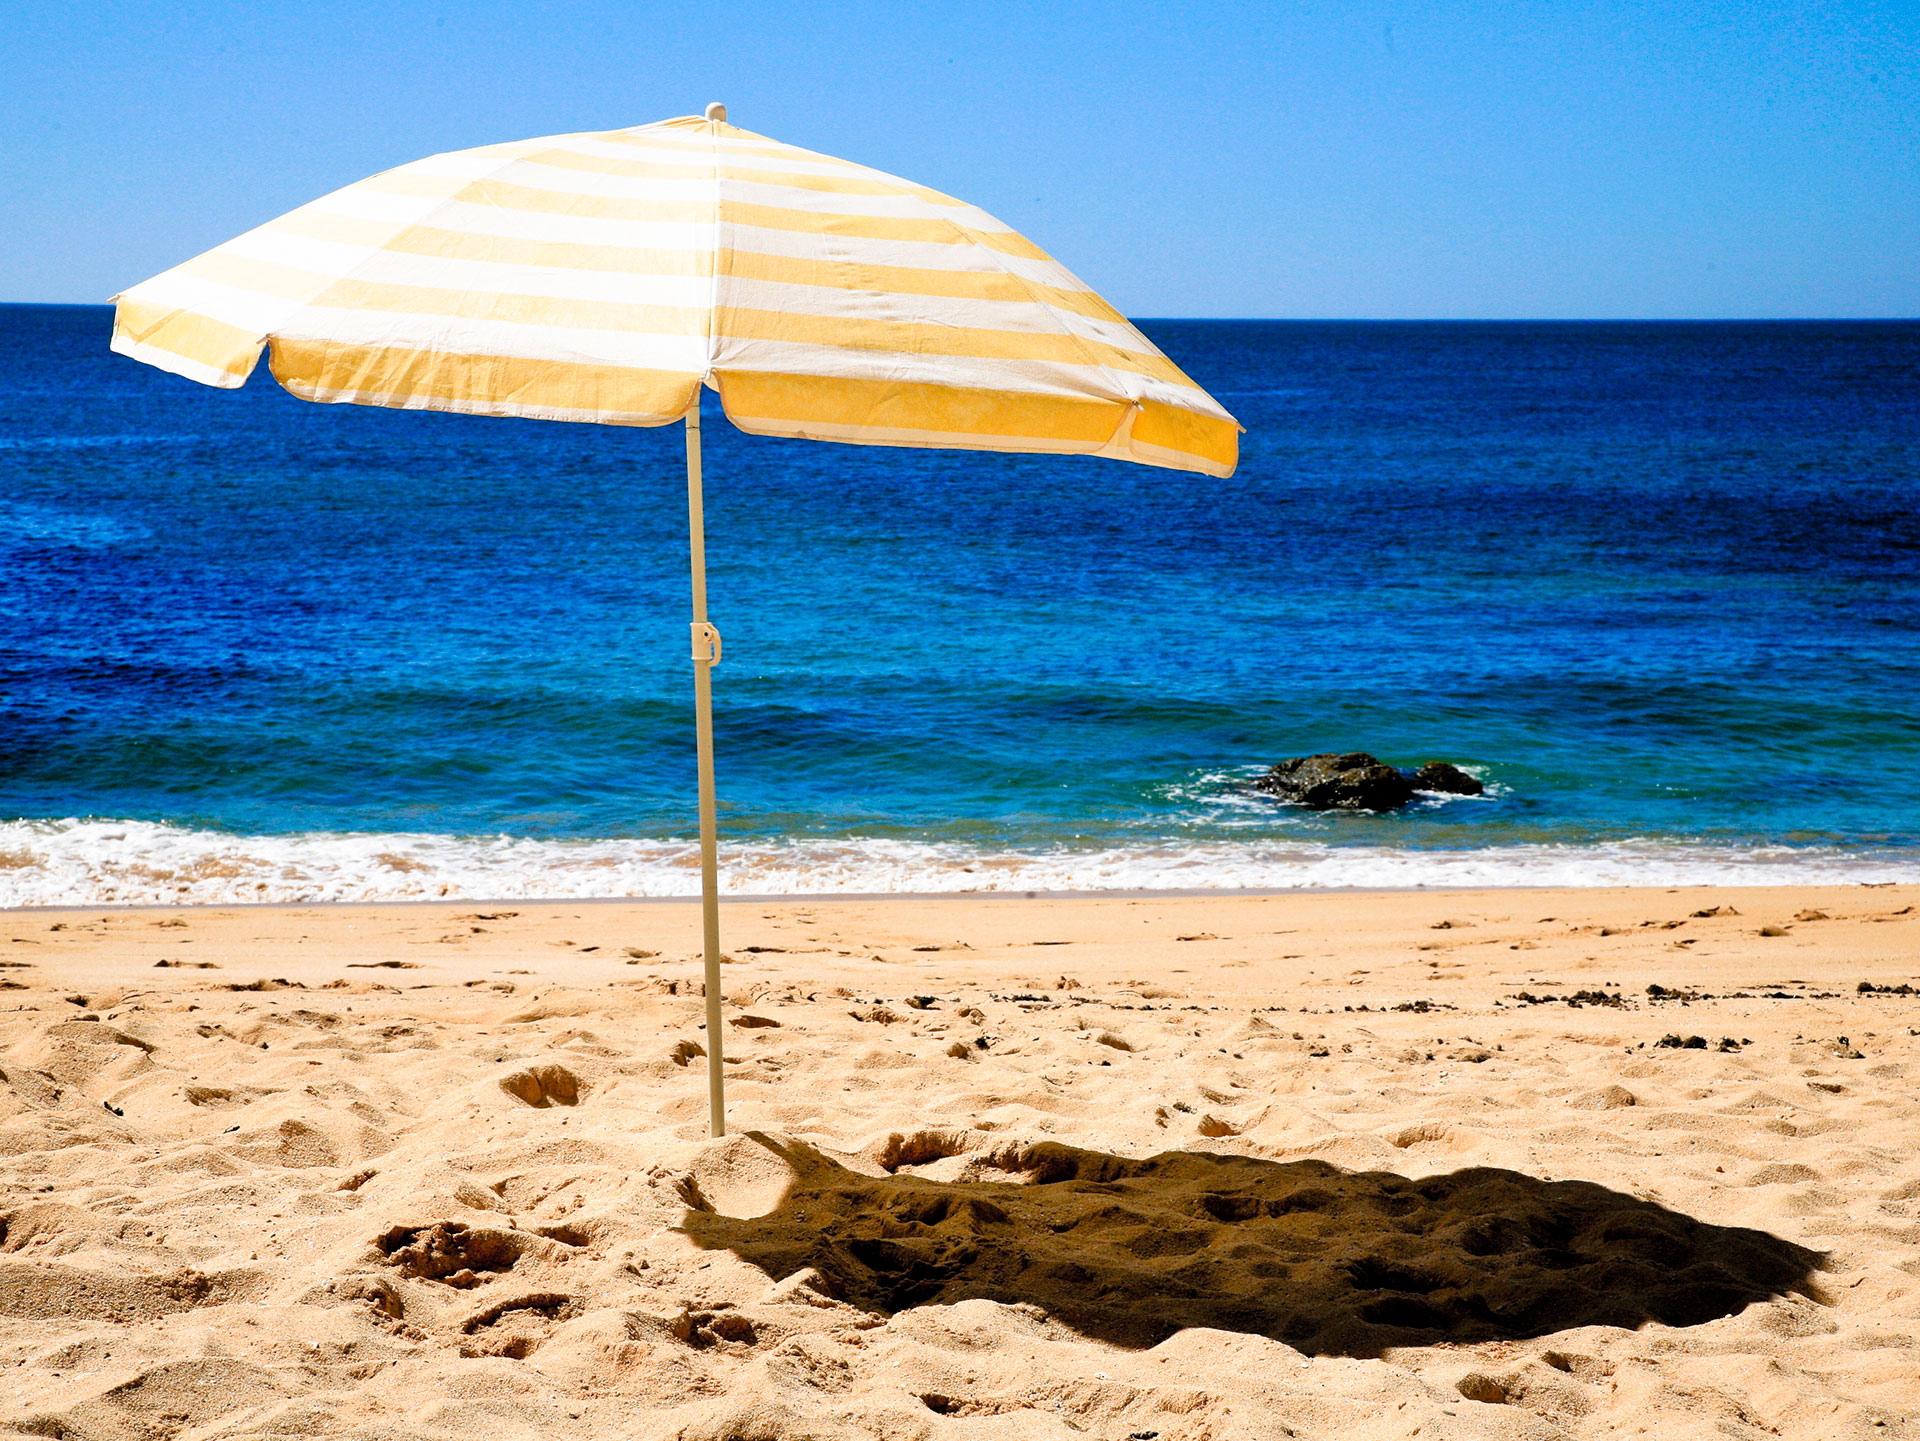 A beach umbrella